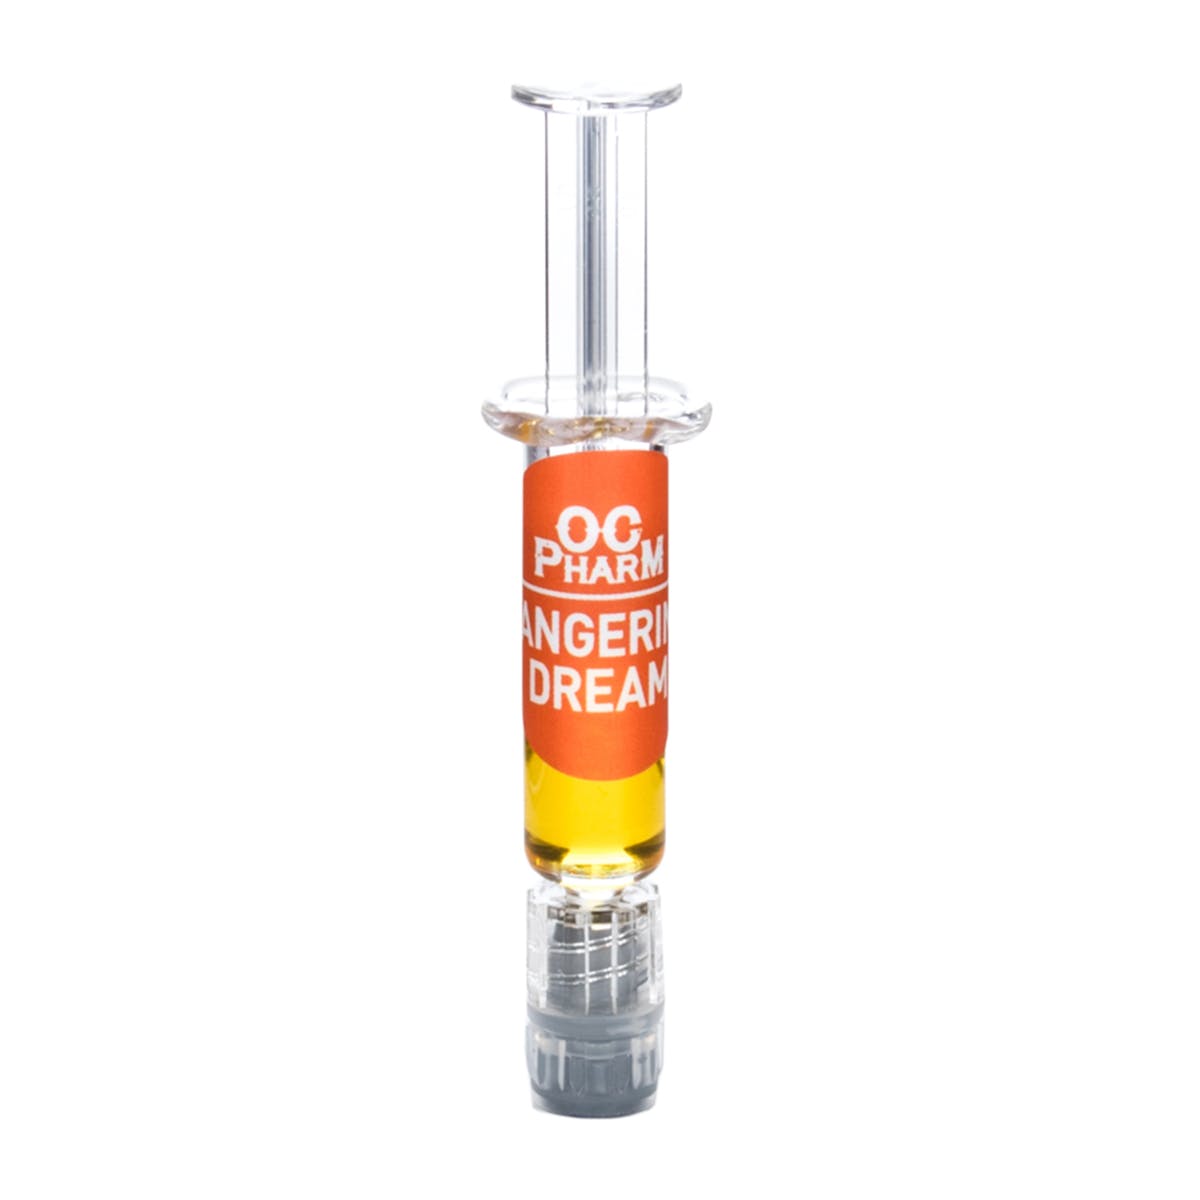 concentrate-oc-pharm-tangerine-dream-prefilled-syringe